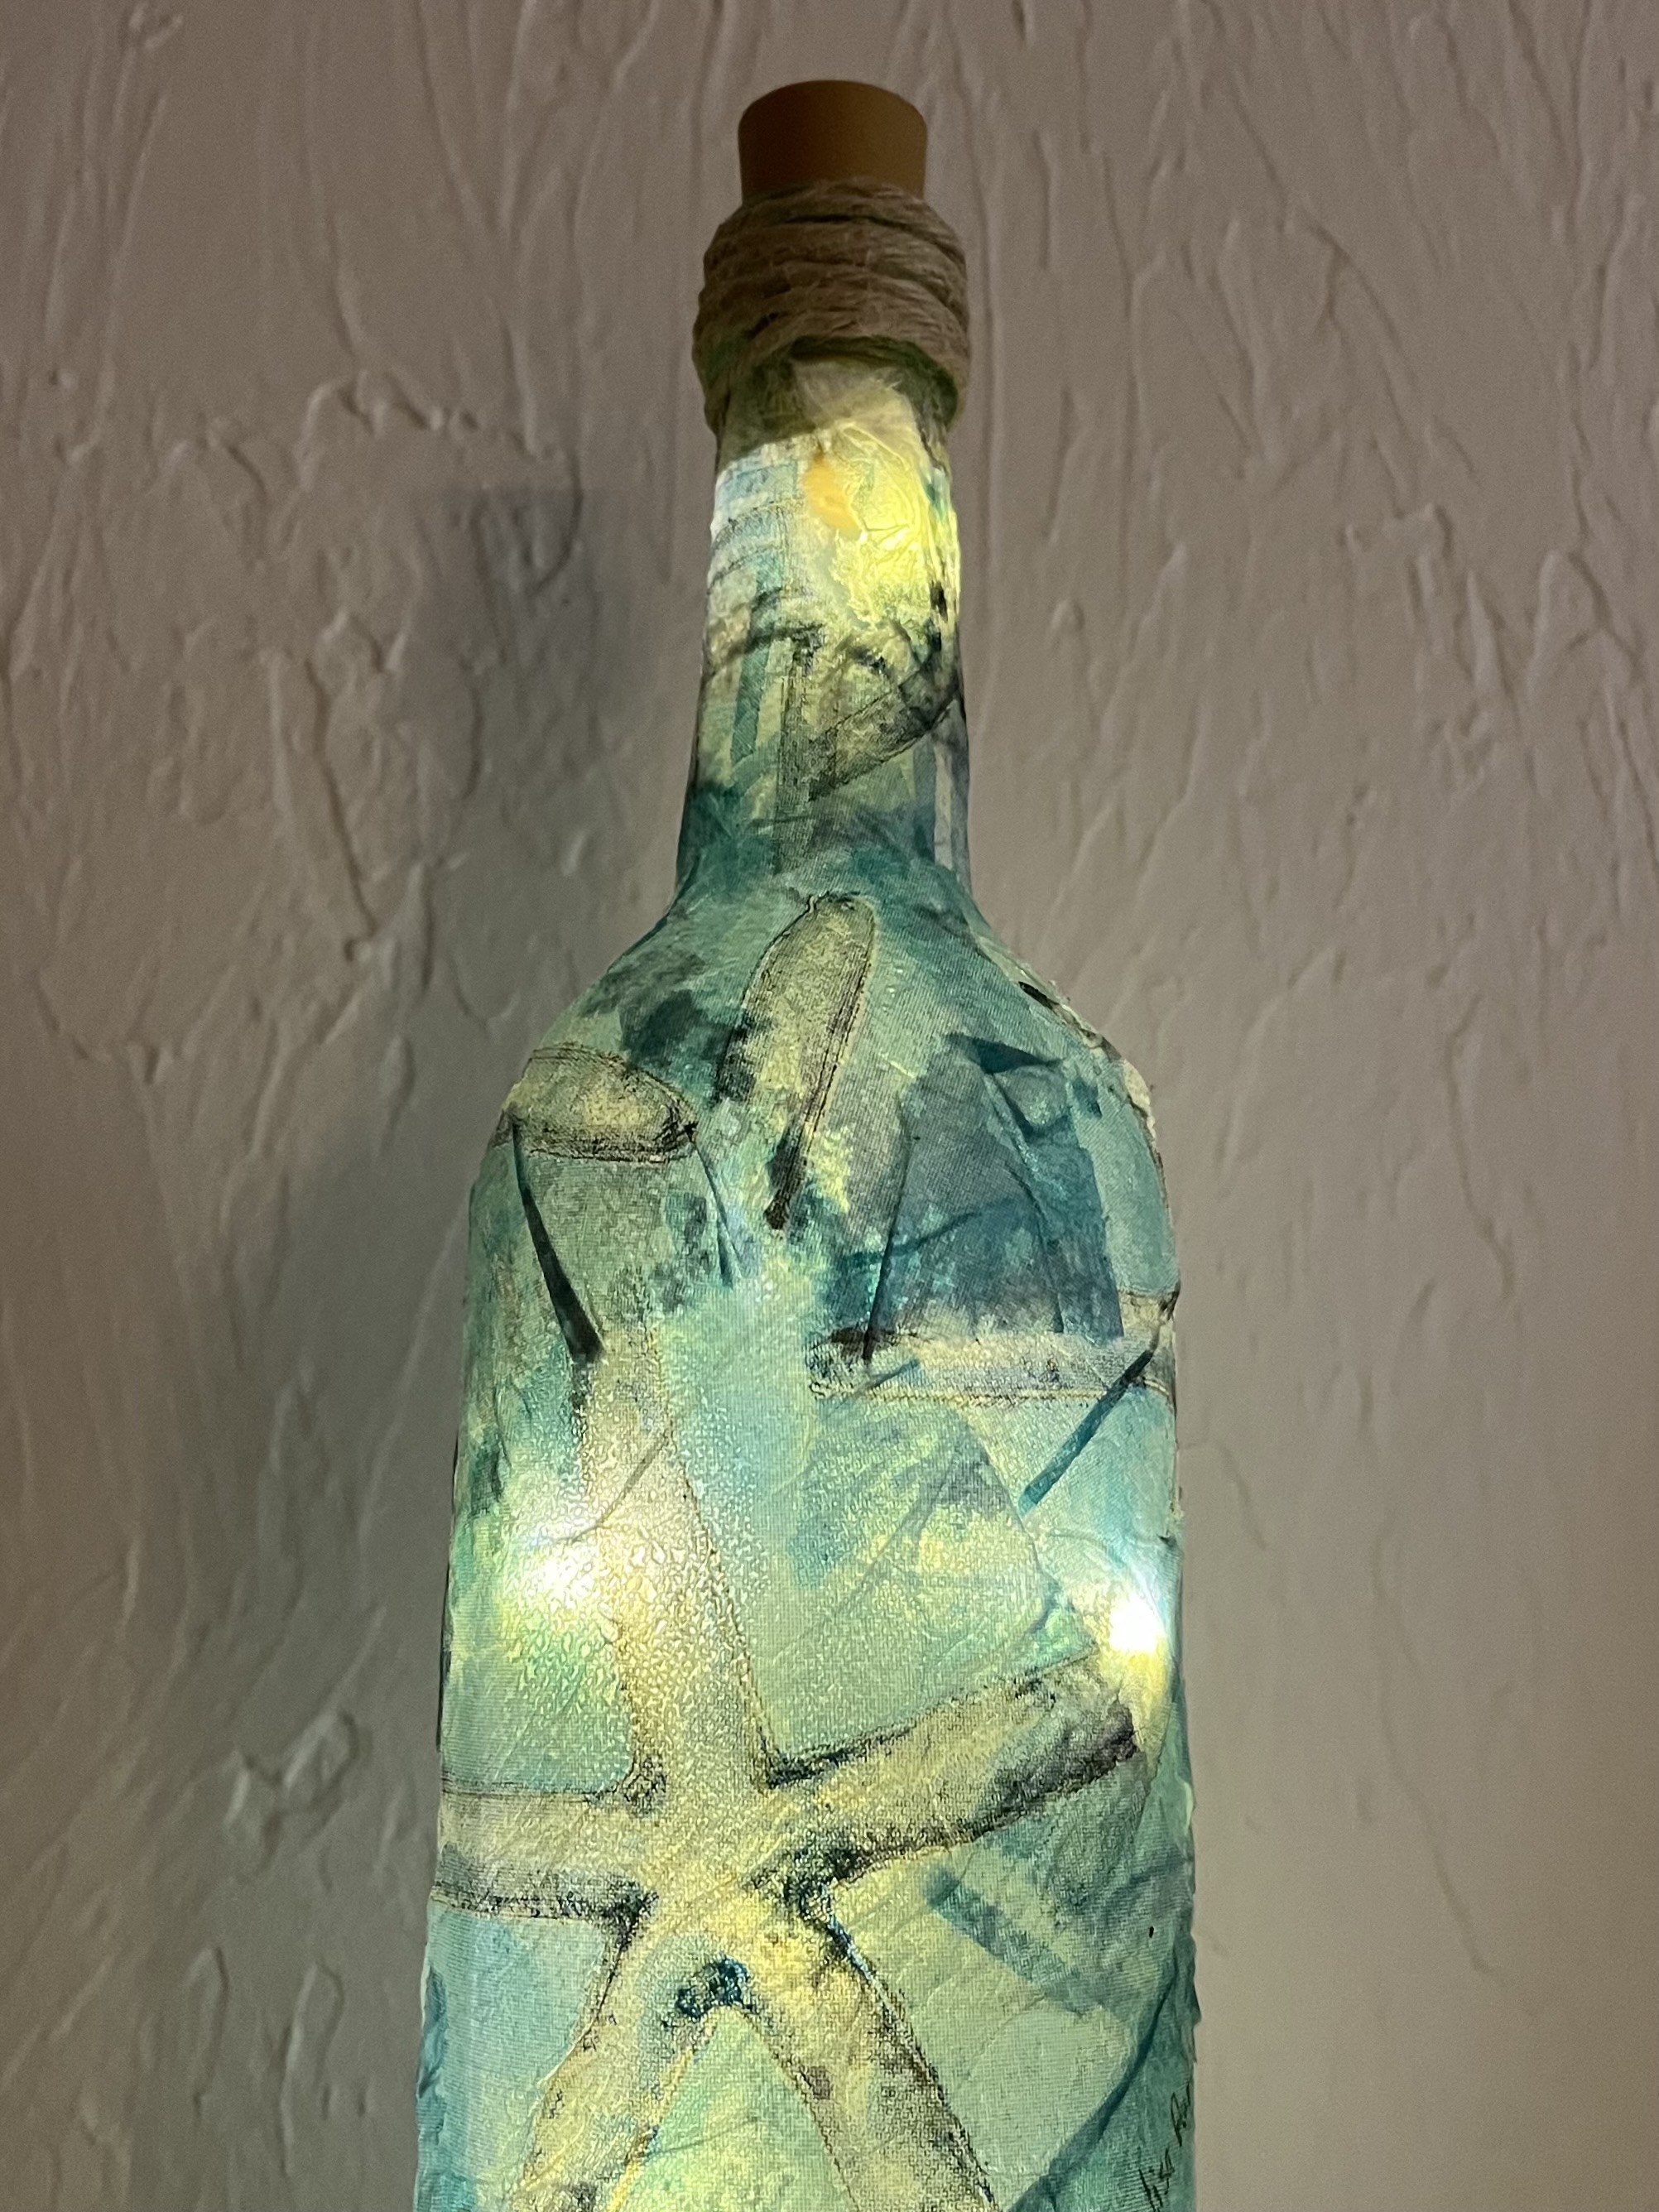 Coastal Craft - Decoupaged wine bottle